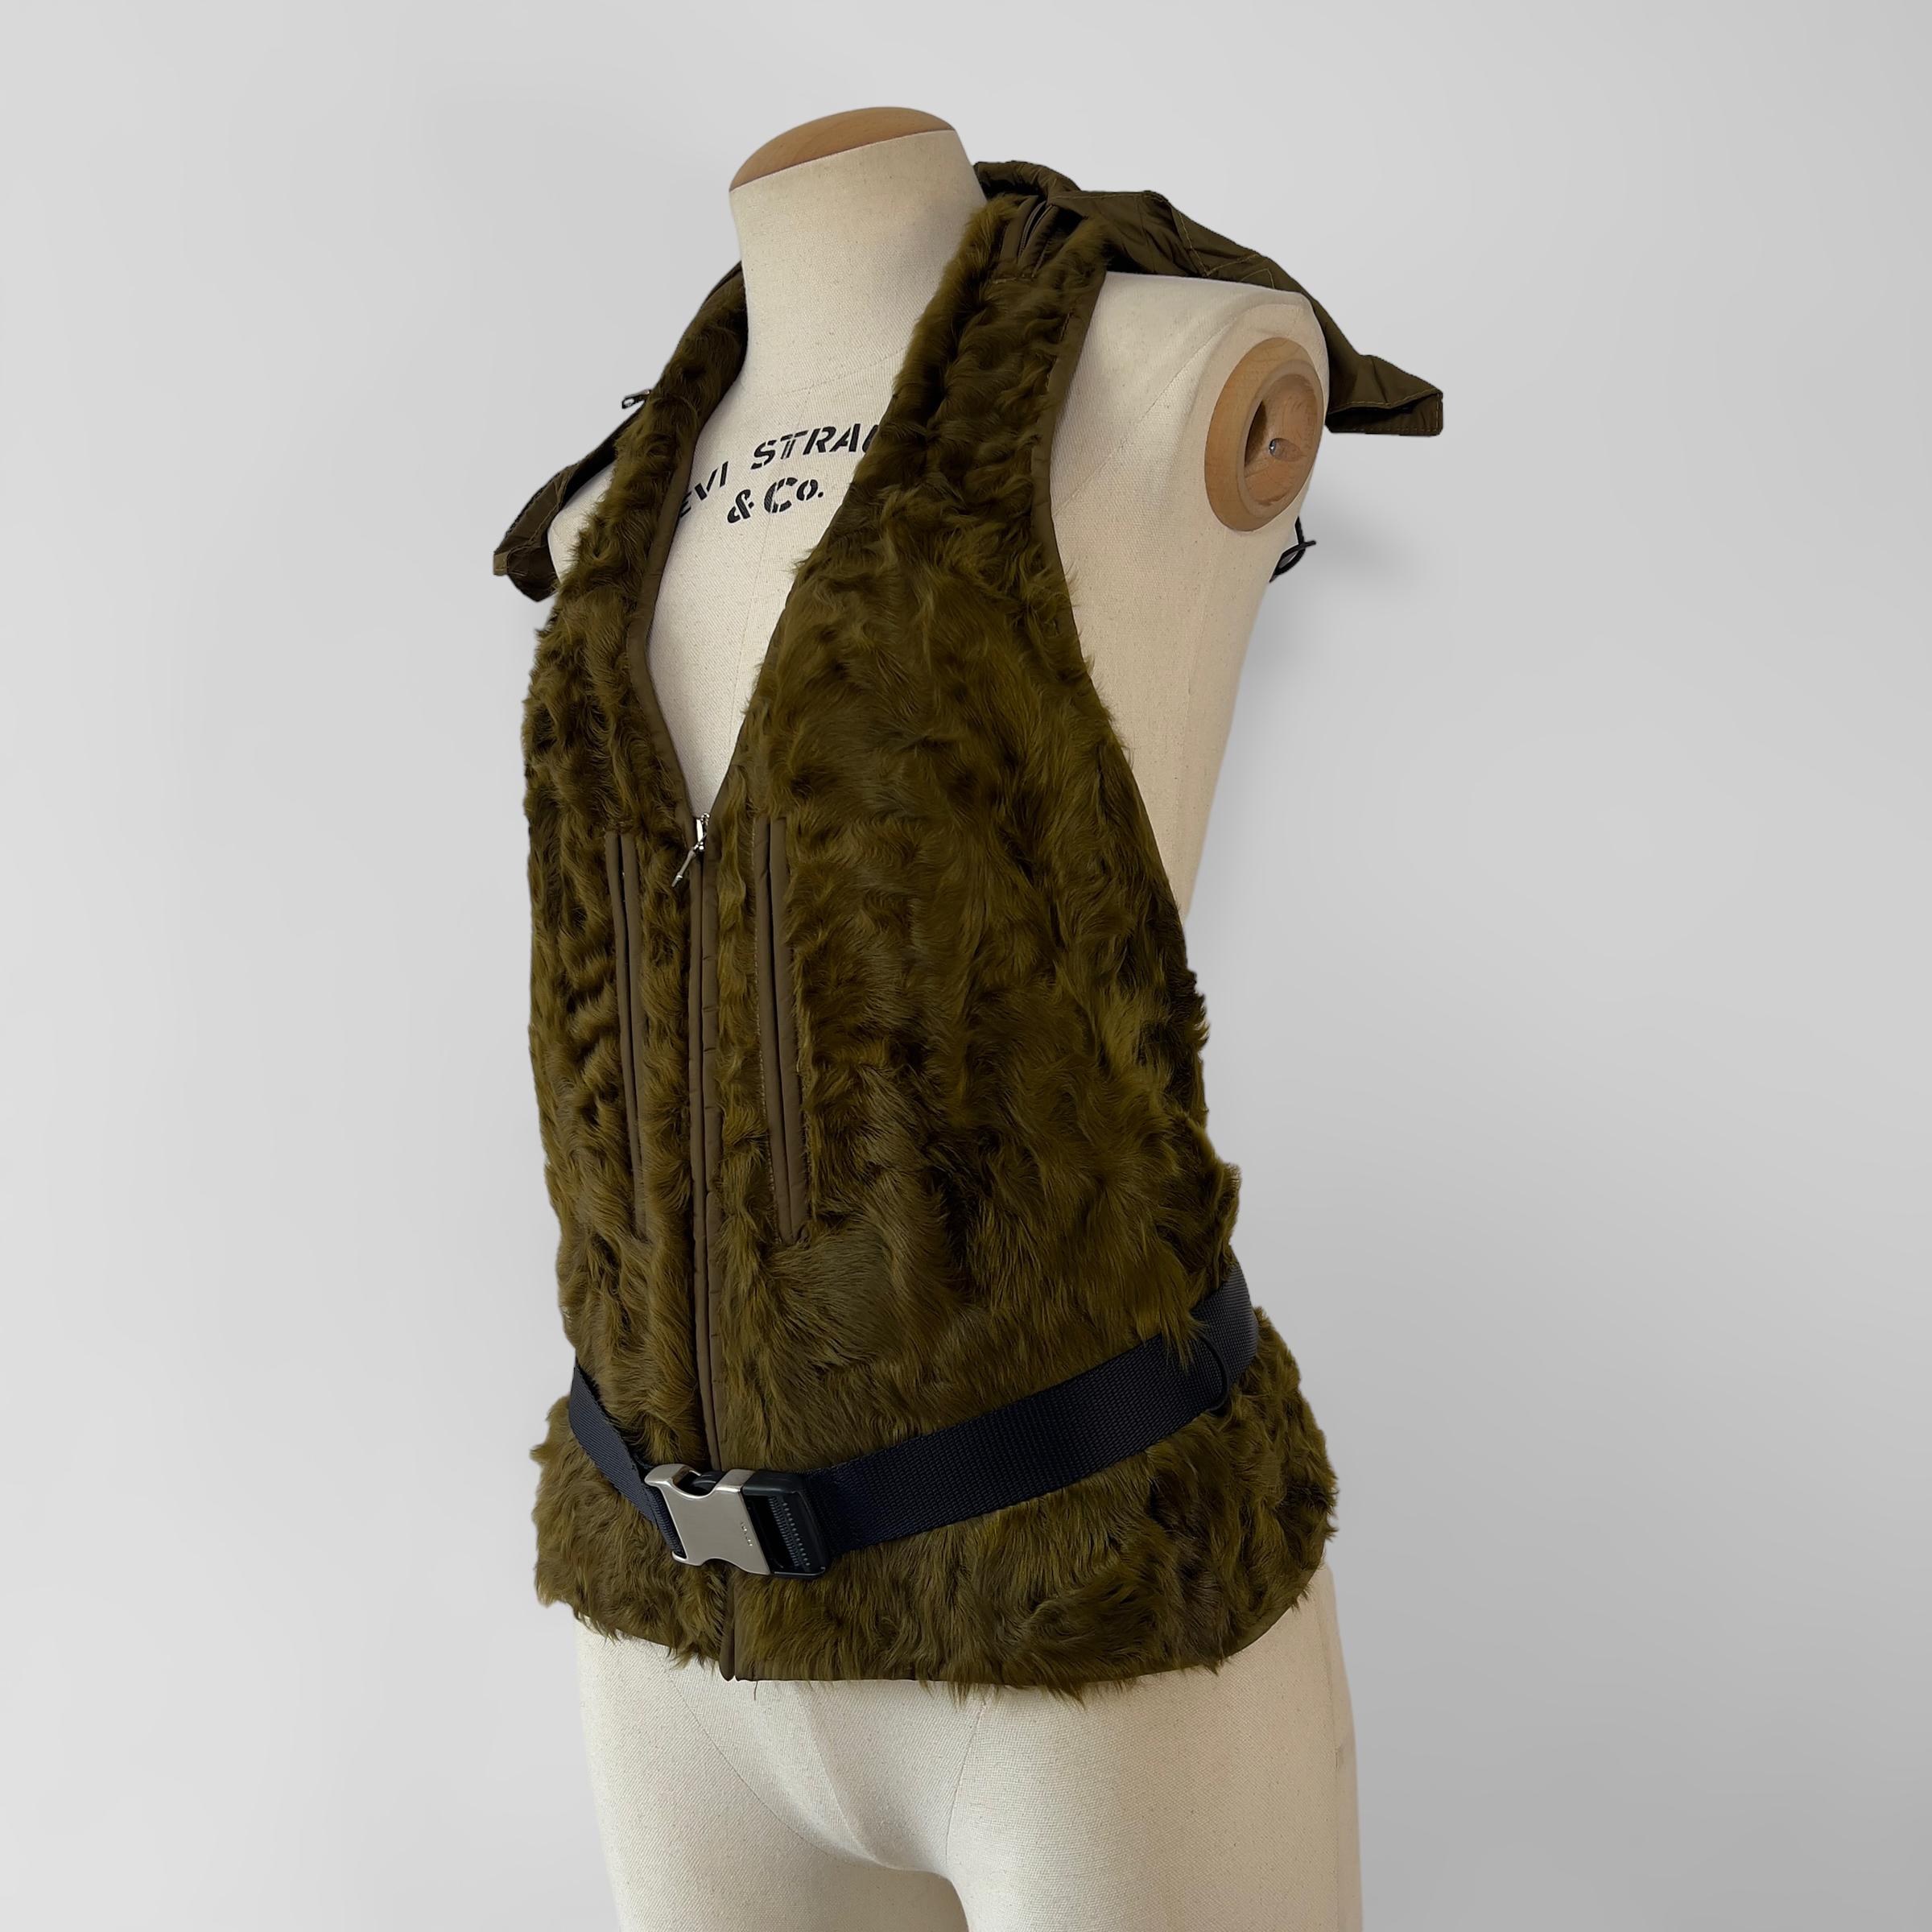 Vintage Prada runway lamb backless waistcoat with nylon buckle belt and nylon hood.  Automne-Hiver 1999

Taille : IT 42.

`Condition : très bon avec peu ou pas de perte de fourrure. 